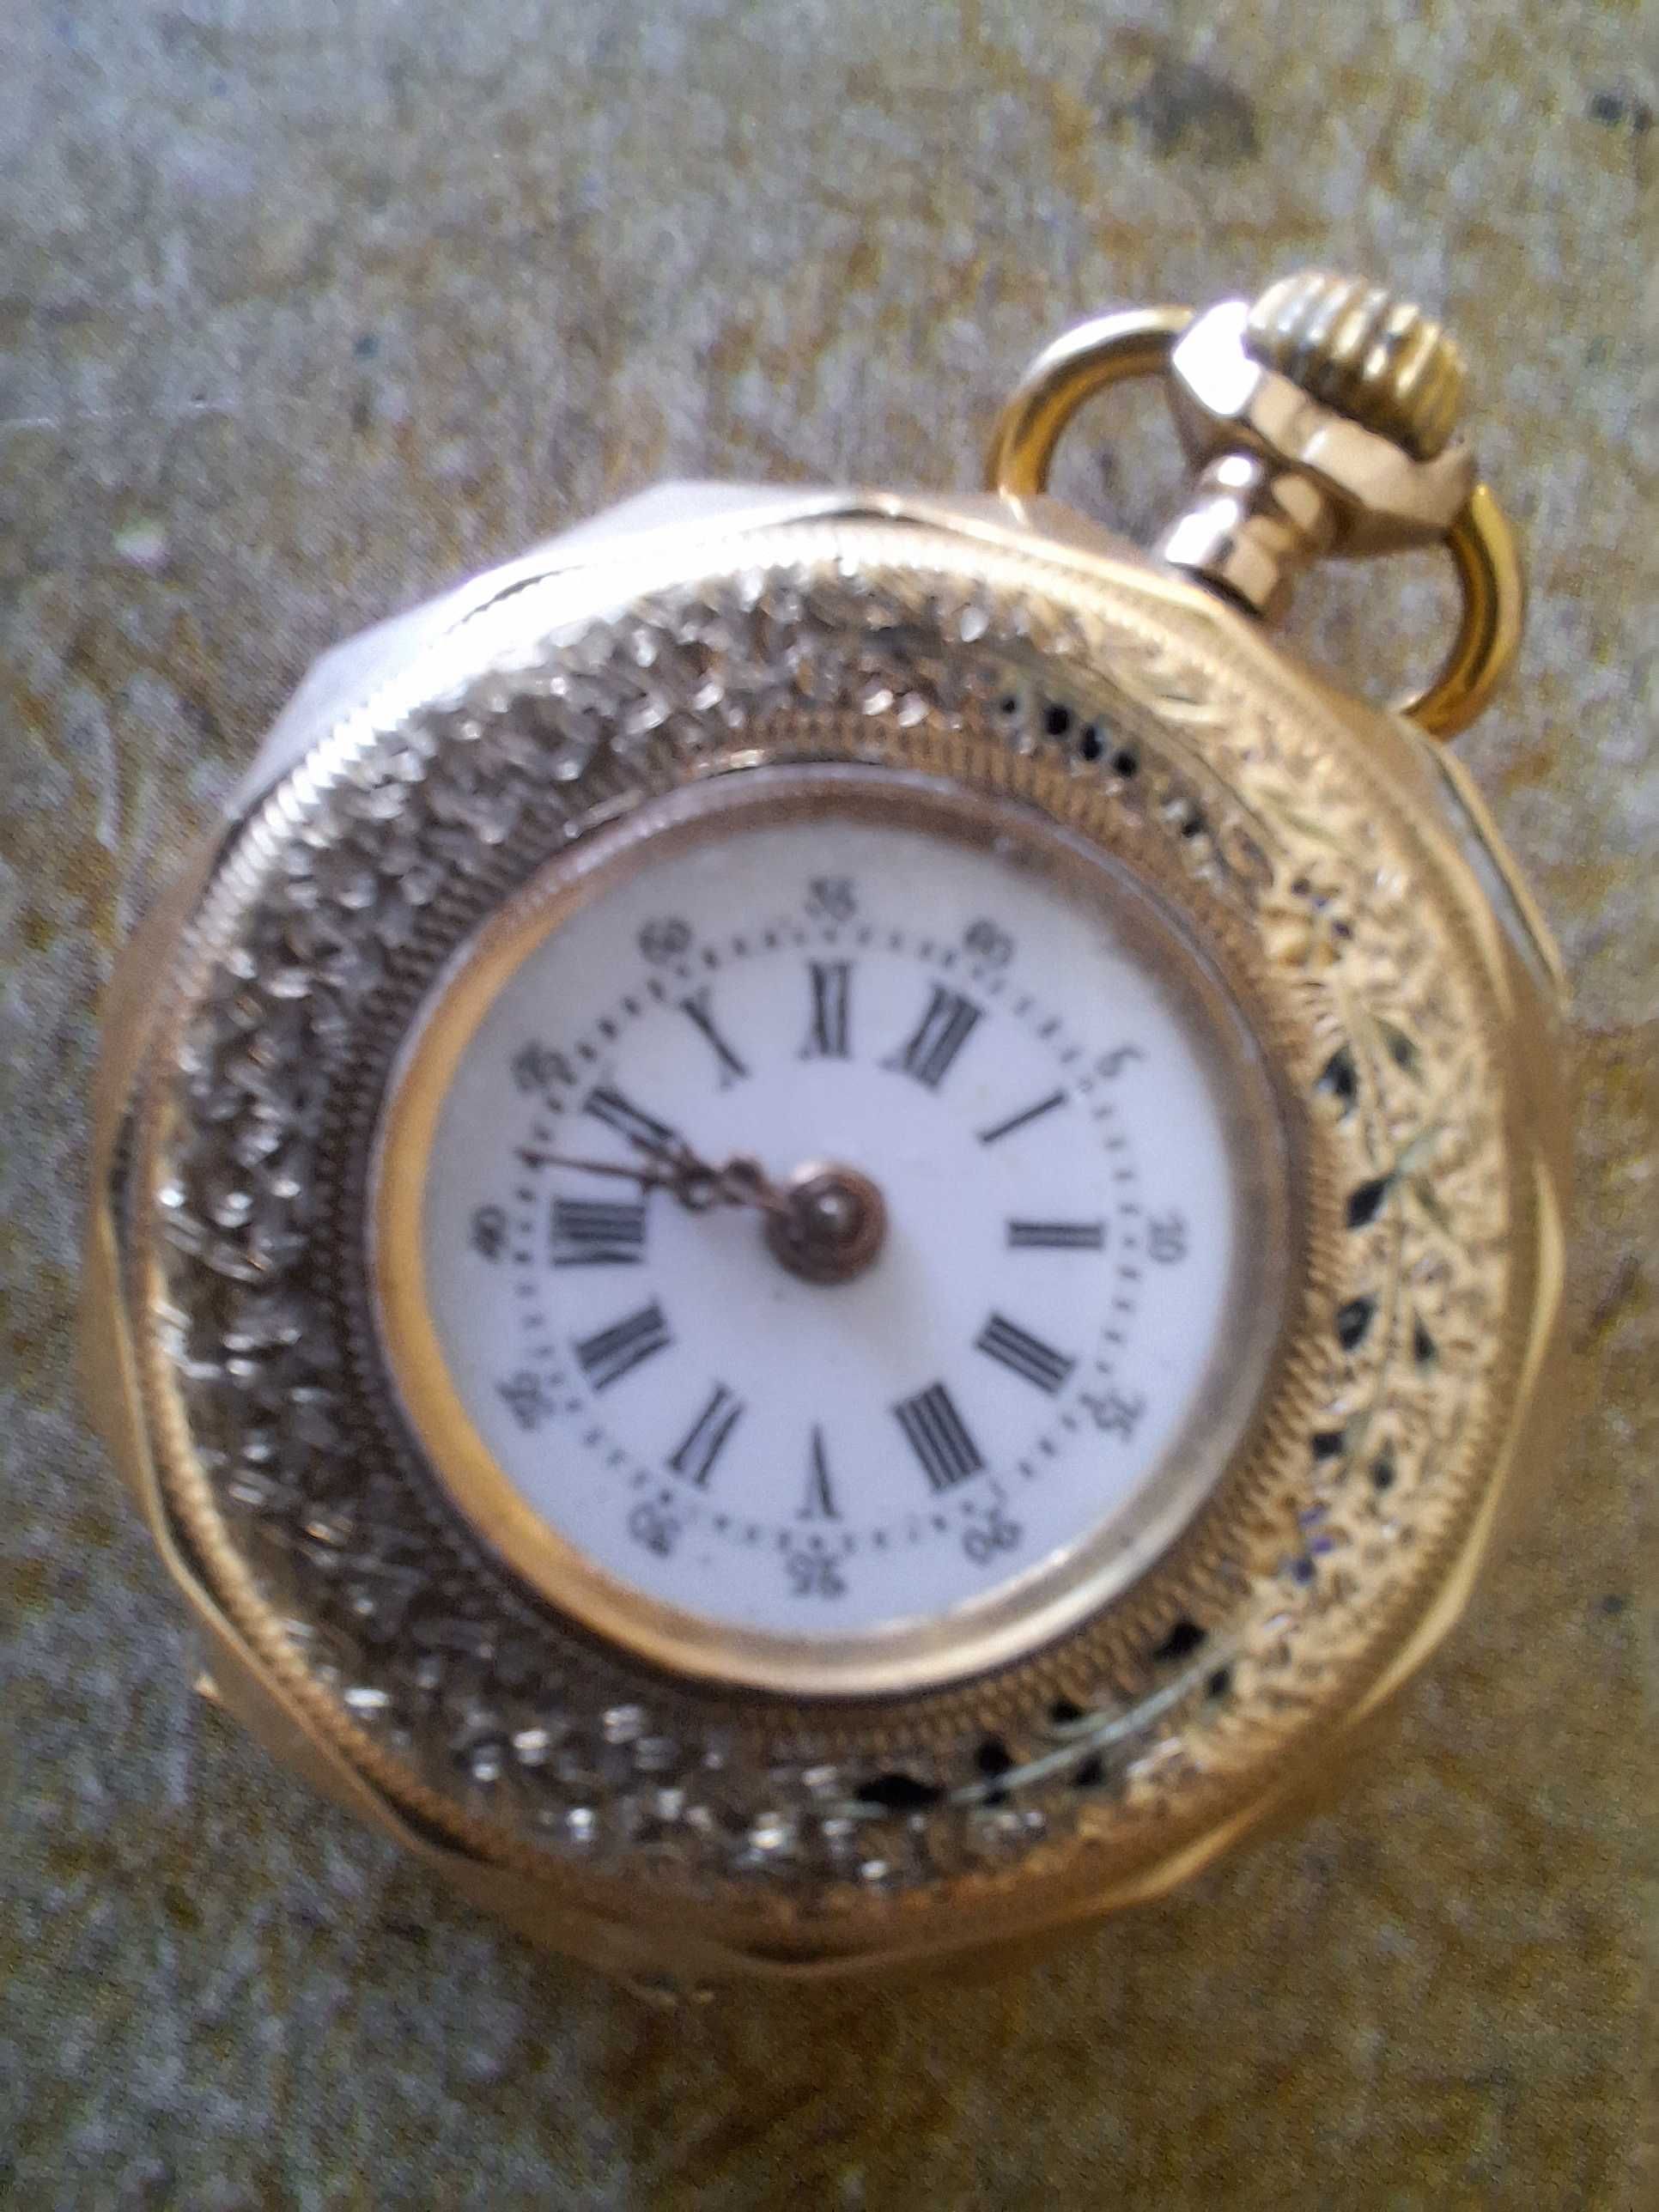 Relógios antigos de valor com muito interesse para colecionadores